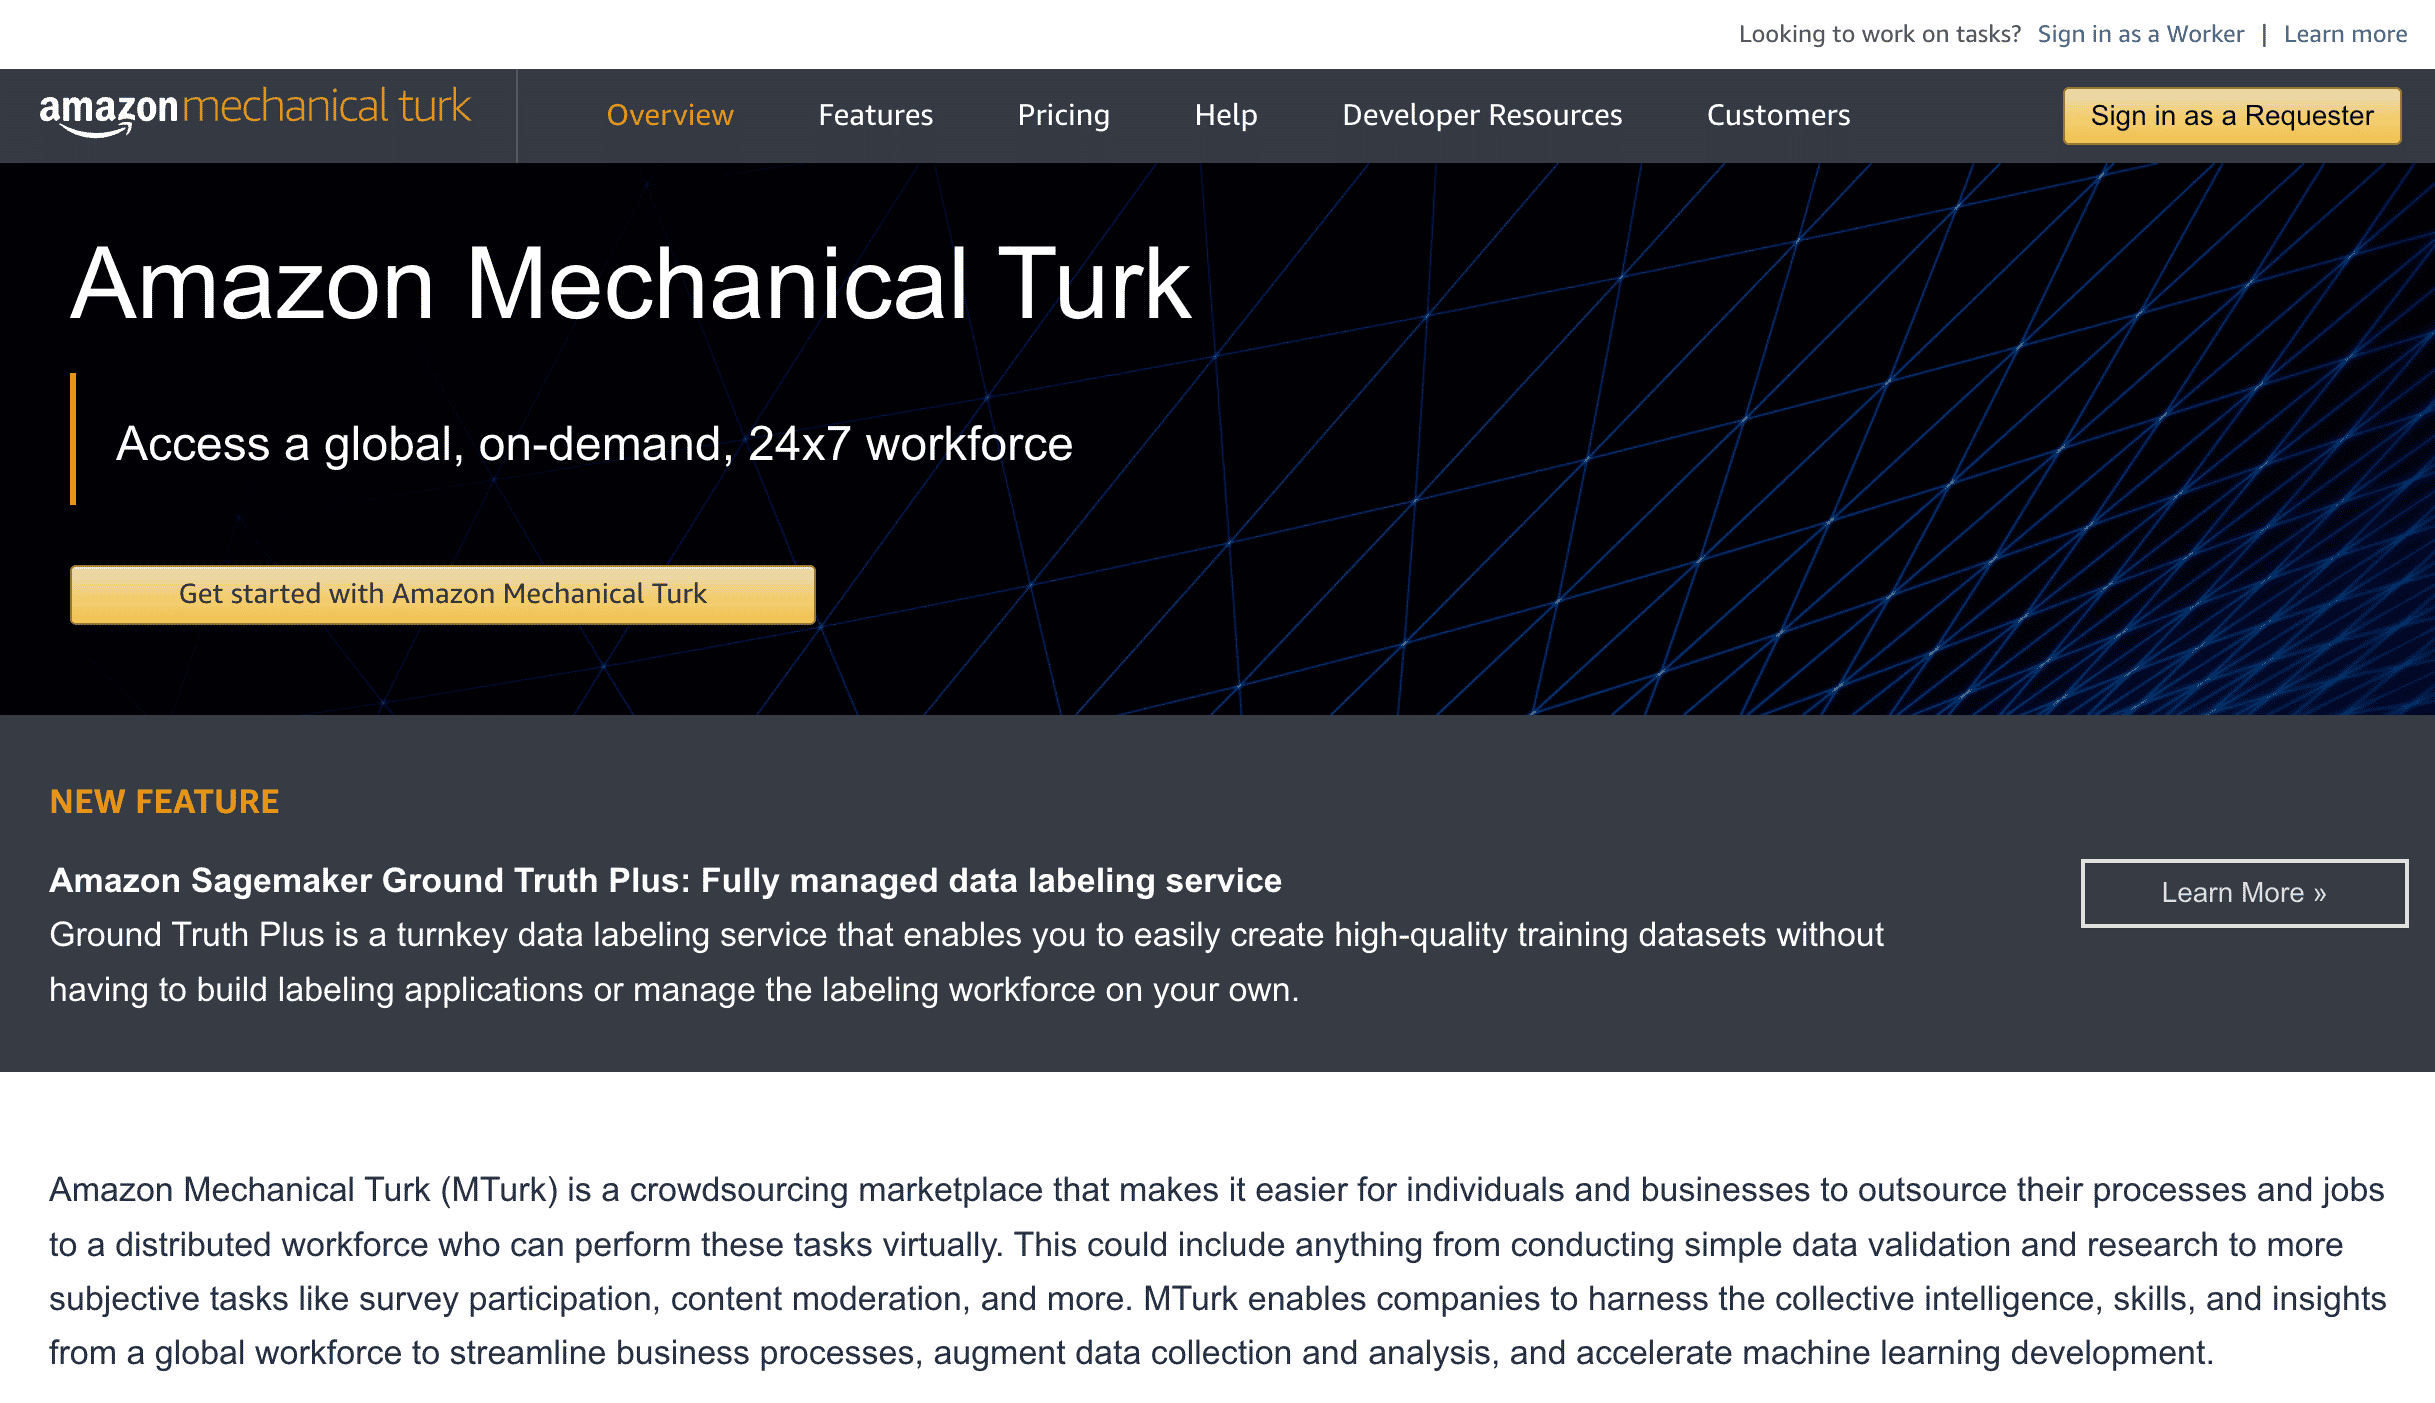 The Amazon mechanical turk homepage